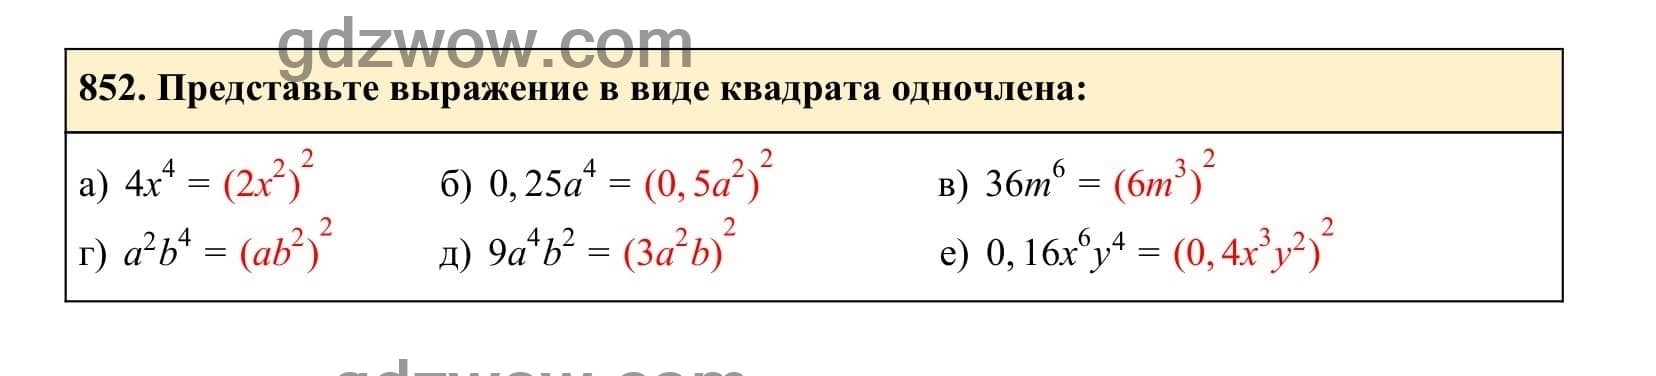 Упражнение 852 - ГДЗ по Алгебре 7 класс Учебник Макарычев (решебник) - GDZwow